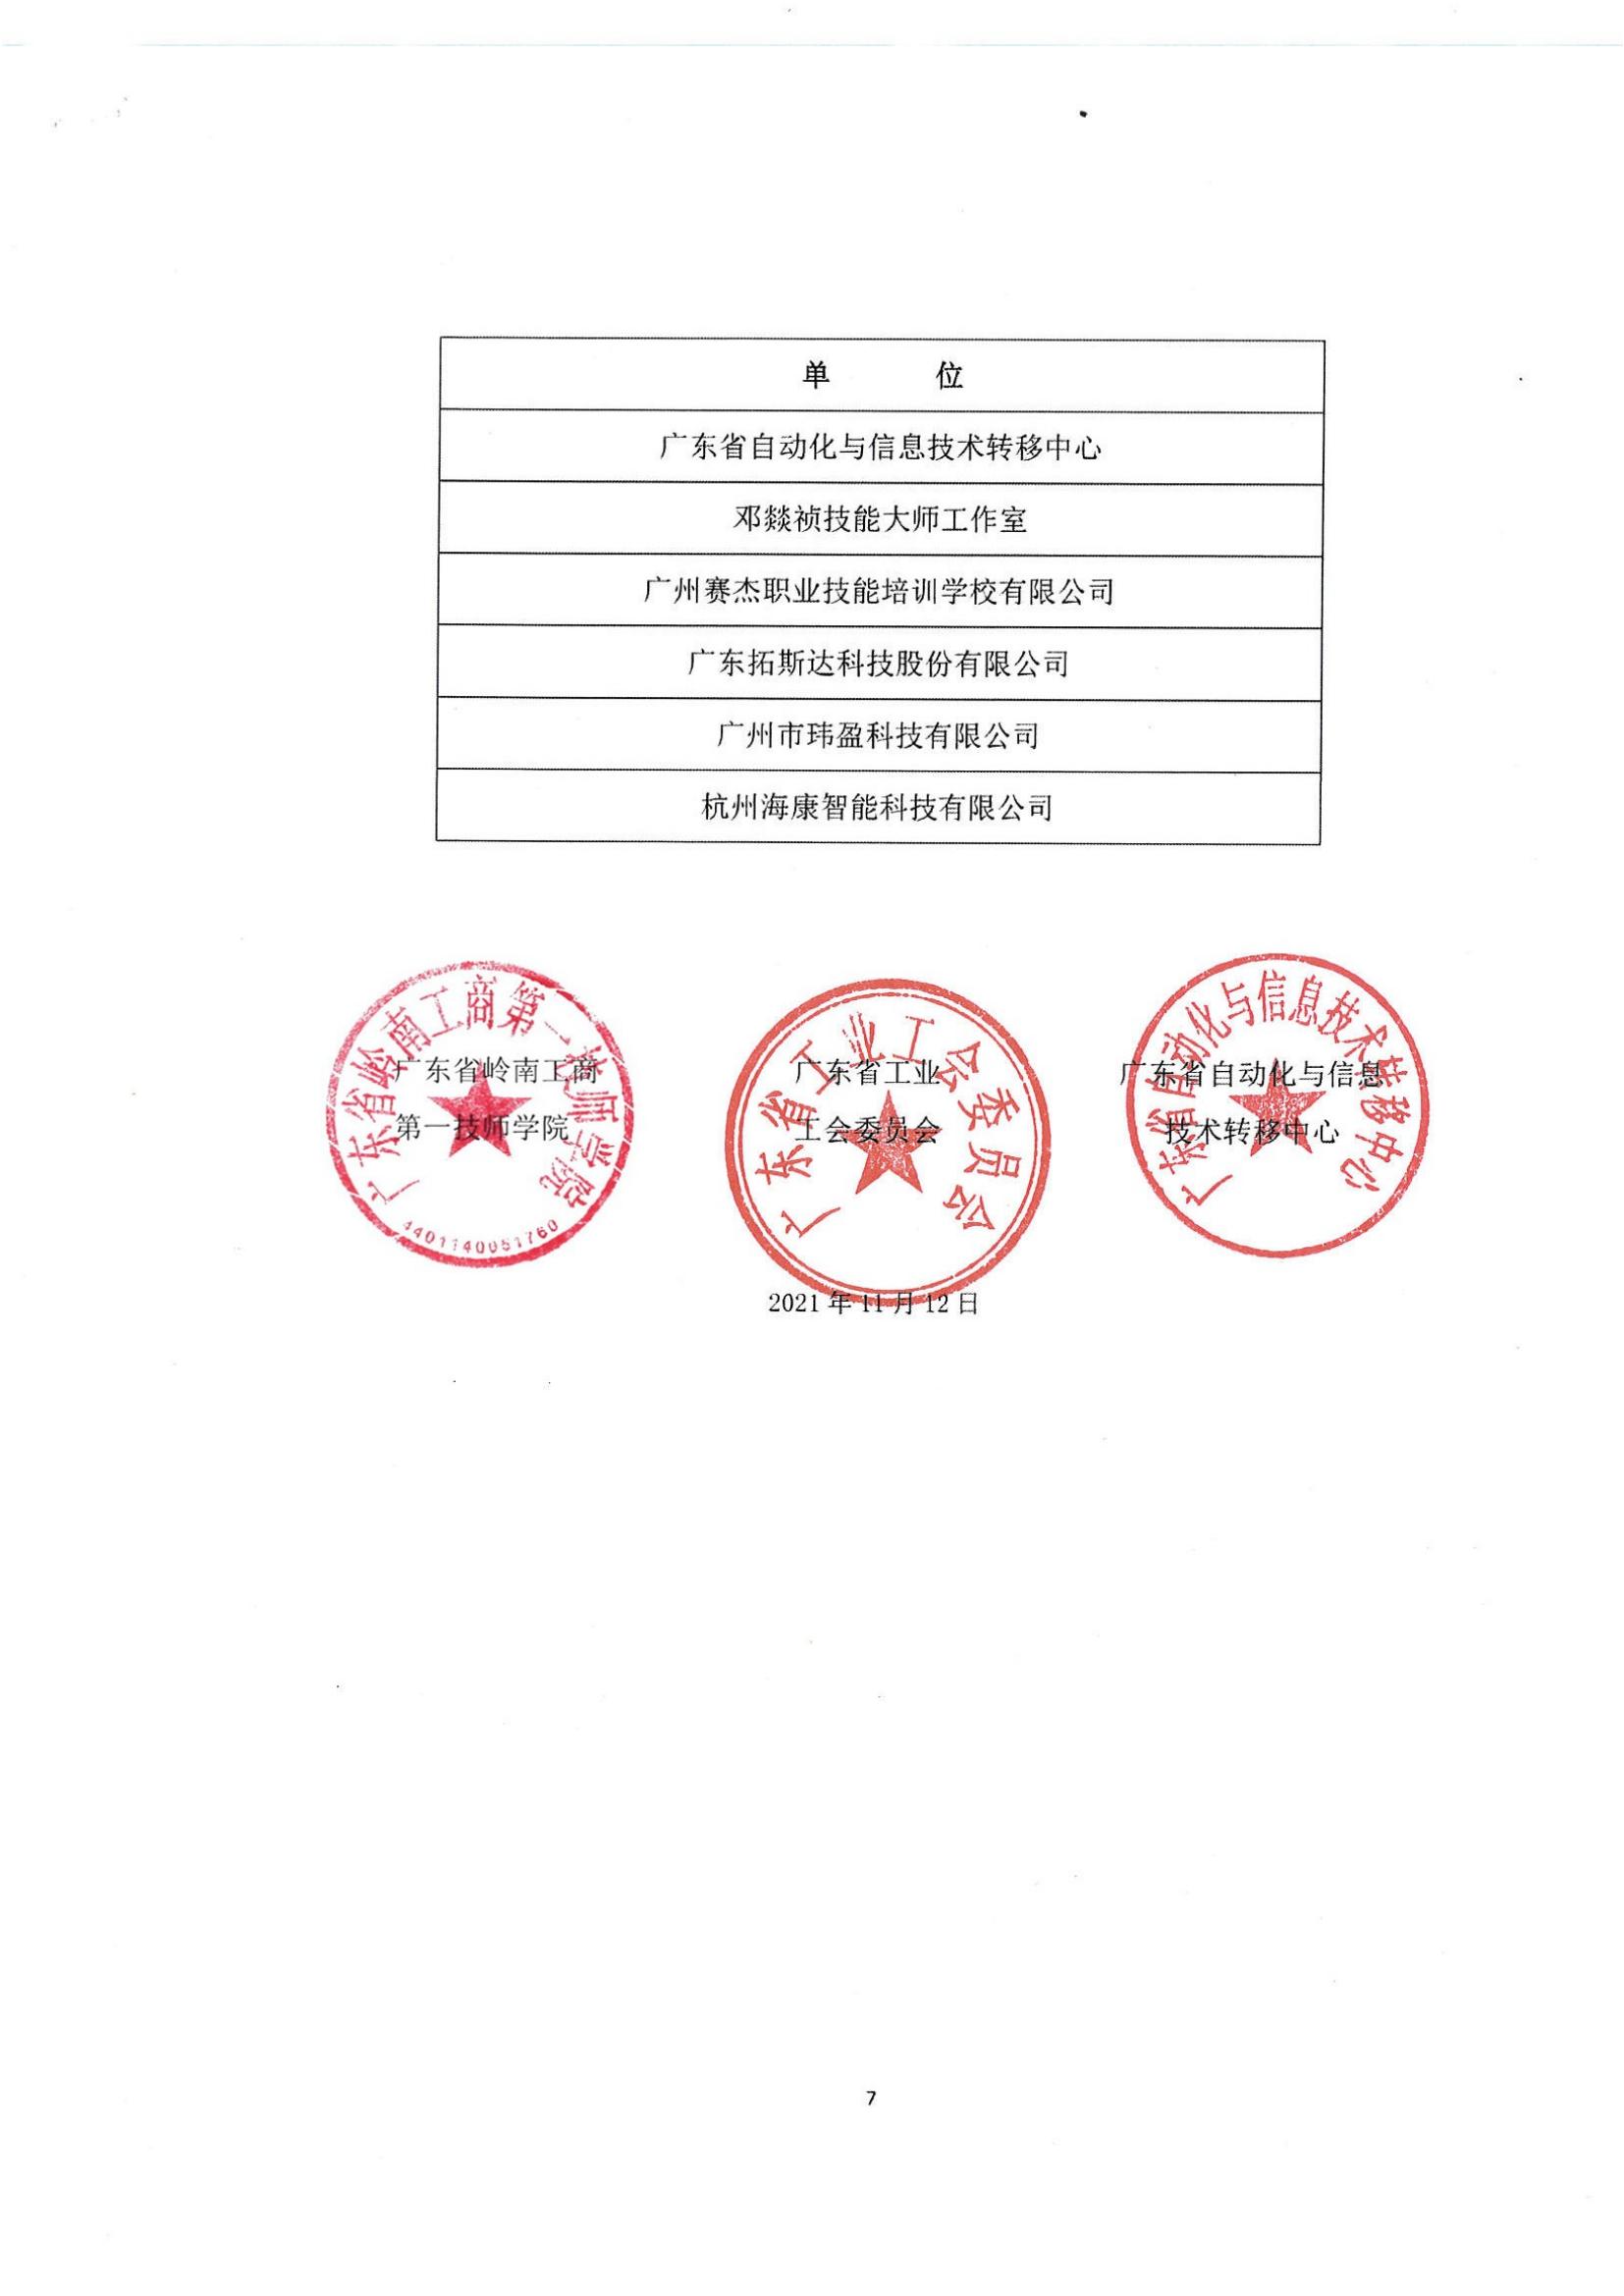 2021年广东省职业技能大赛——机电一体化职业技能竞赛获奖名单公布_06.jpg